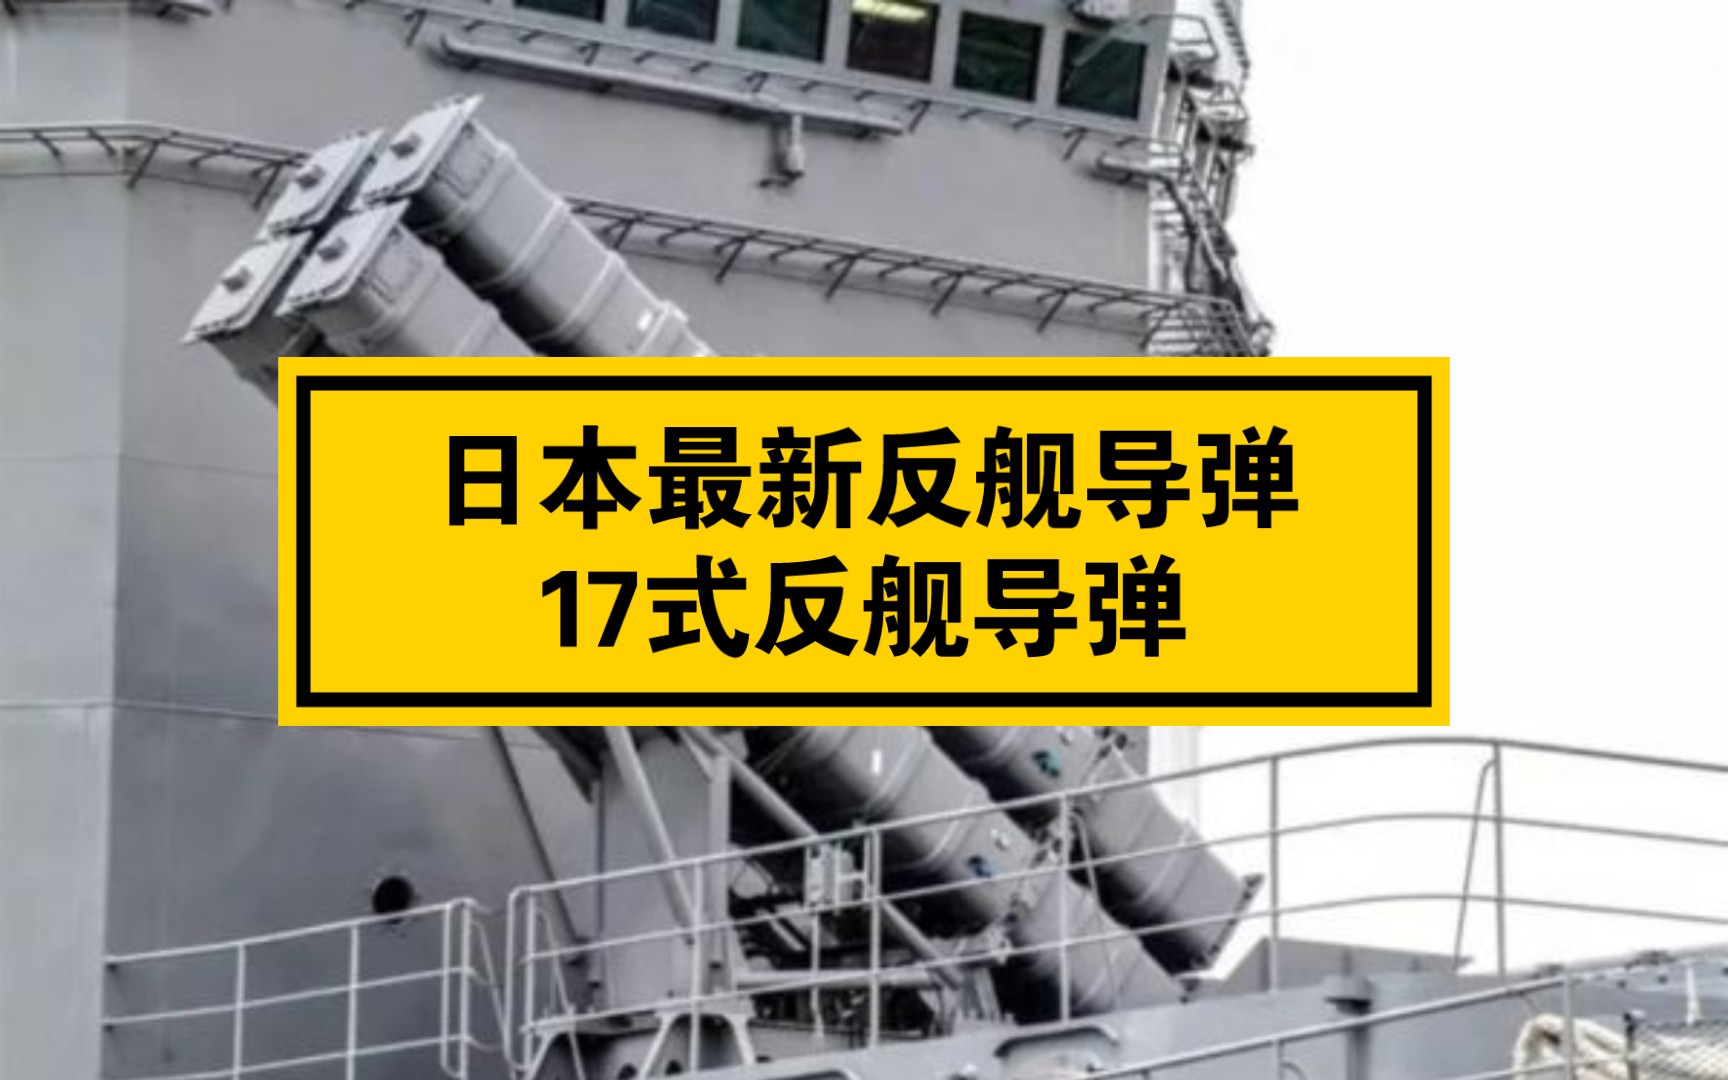 日本最新反舰导弹:17式反舰导弹